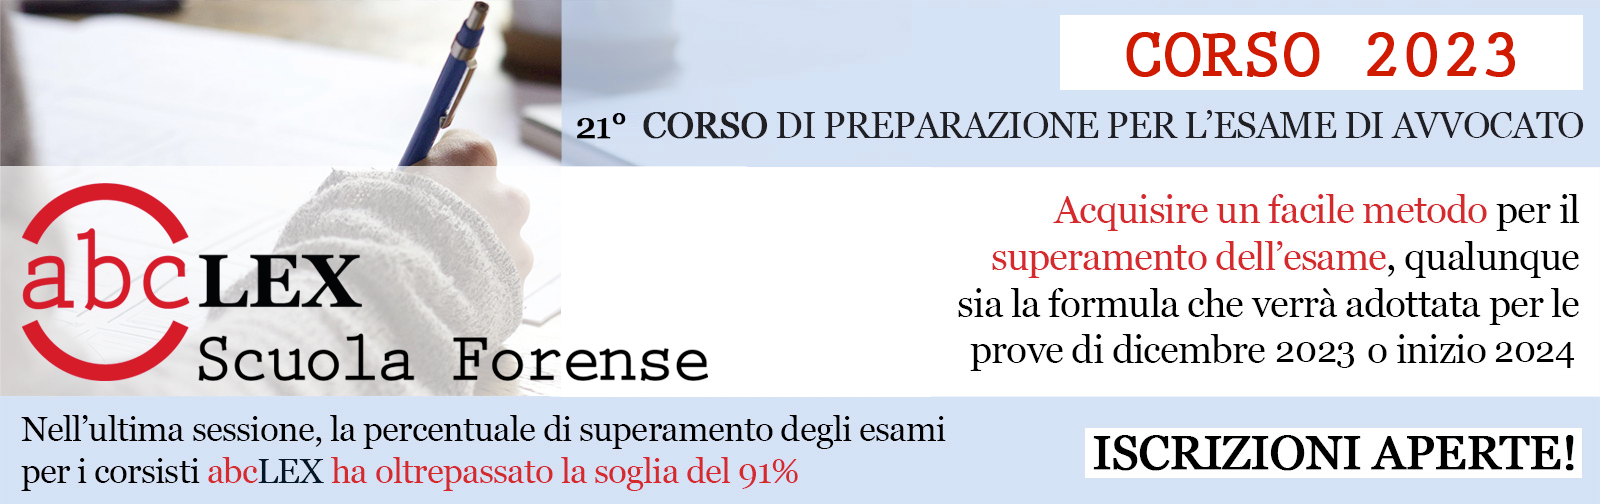         abcLEX Scuola Forense - Corso 2023